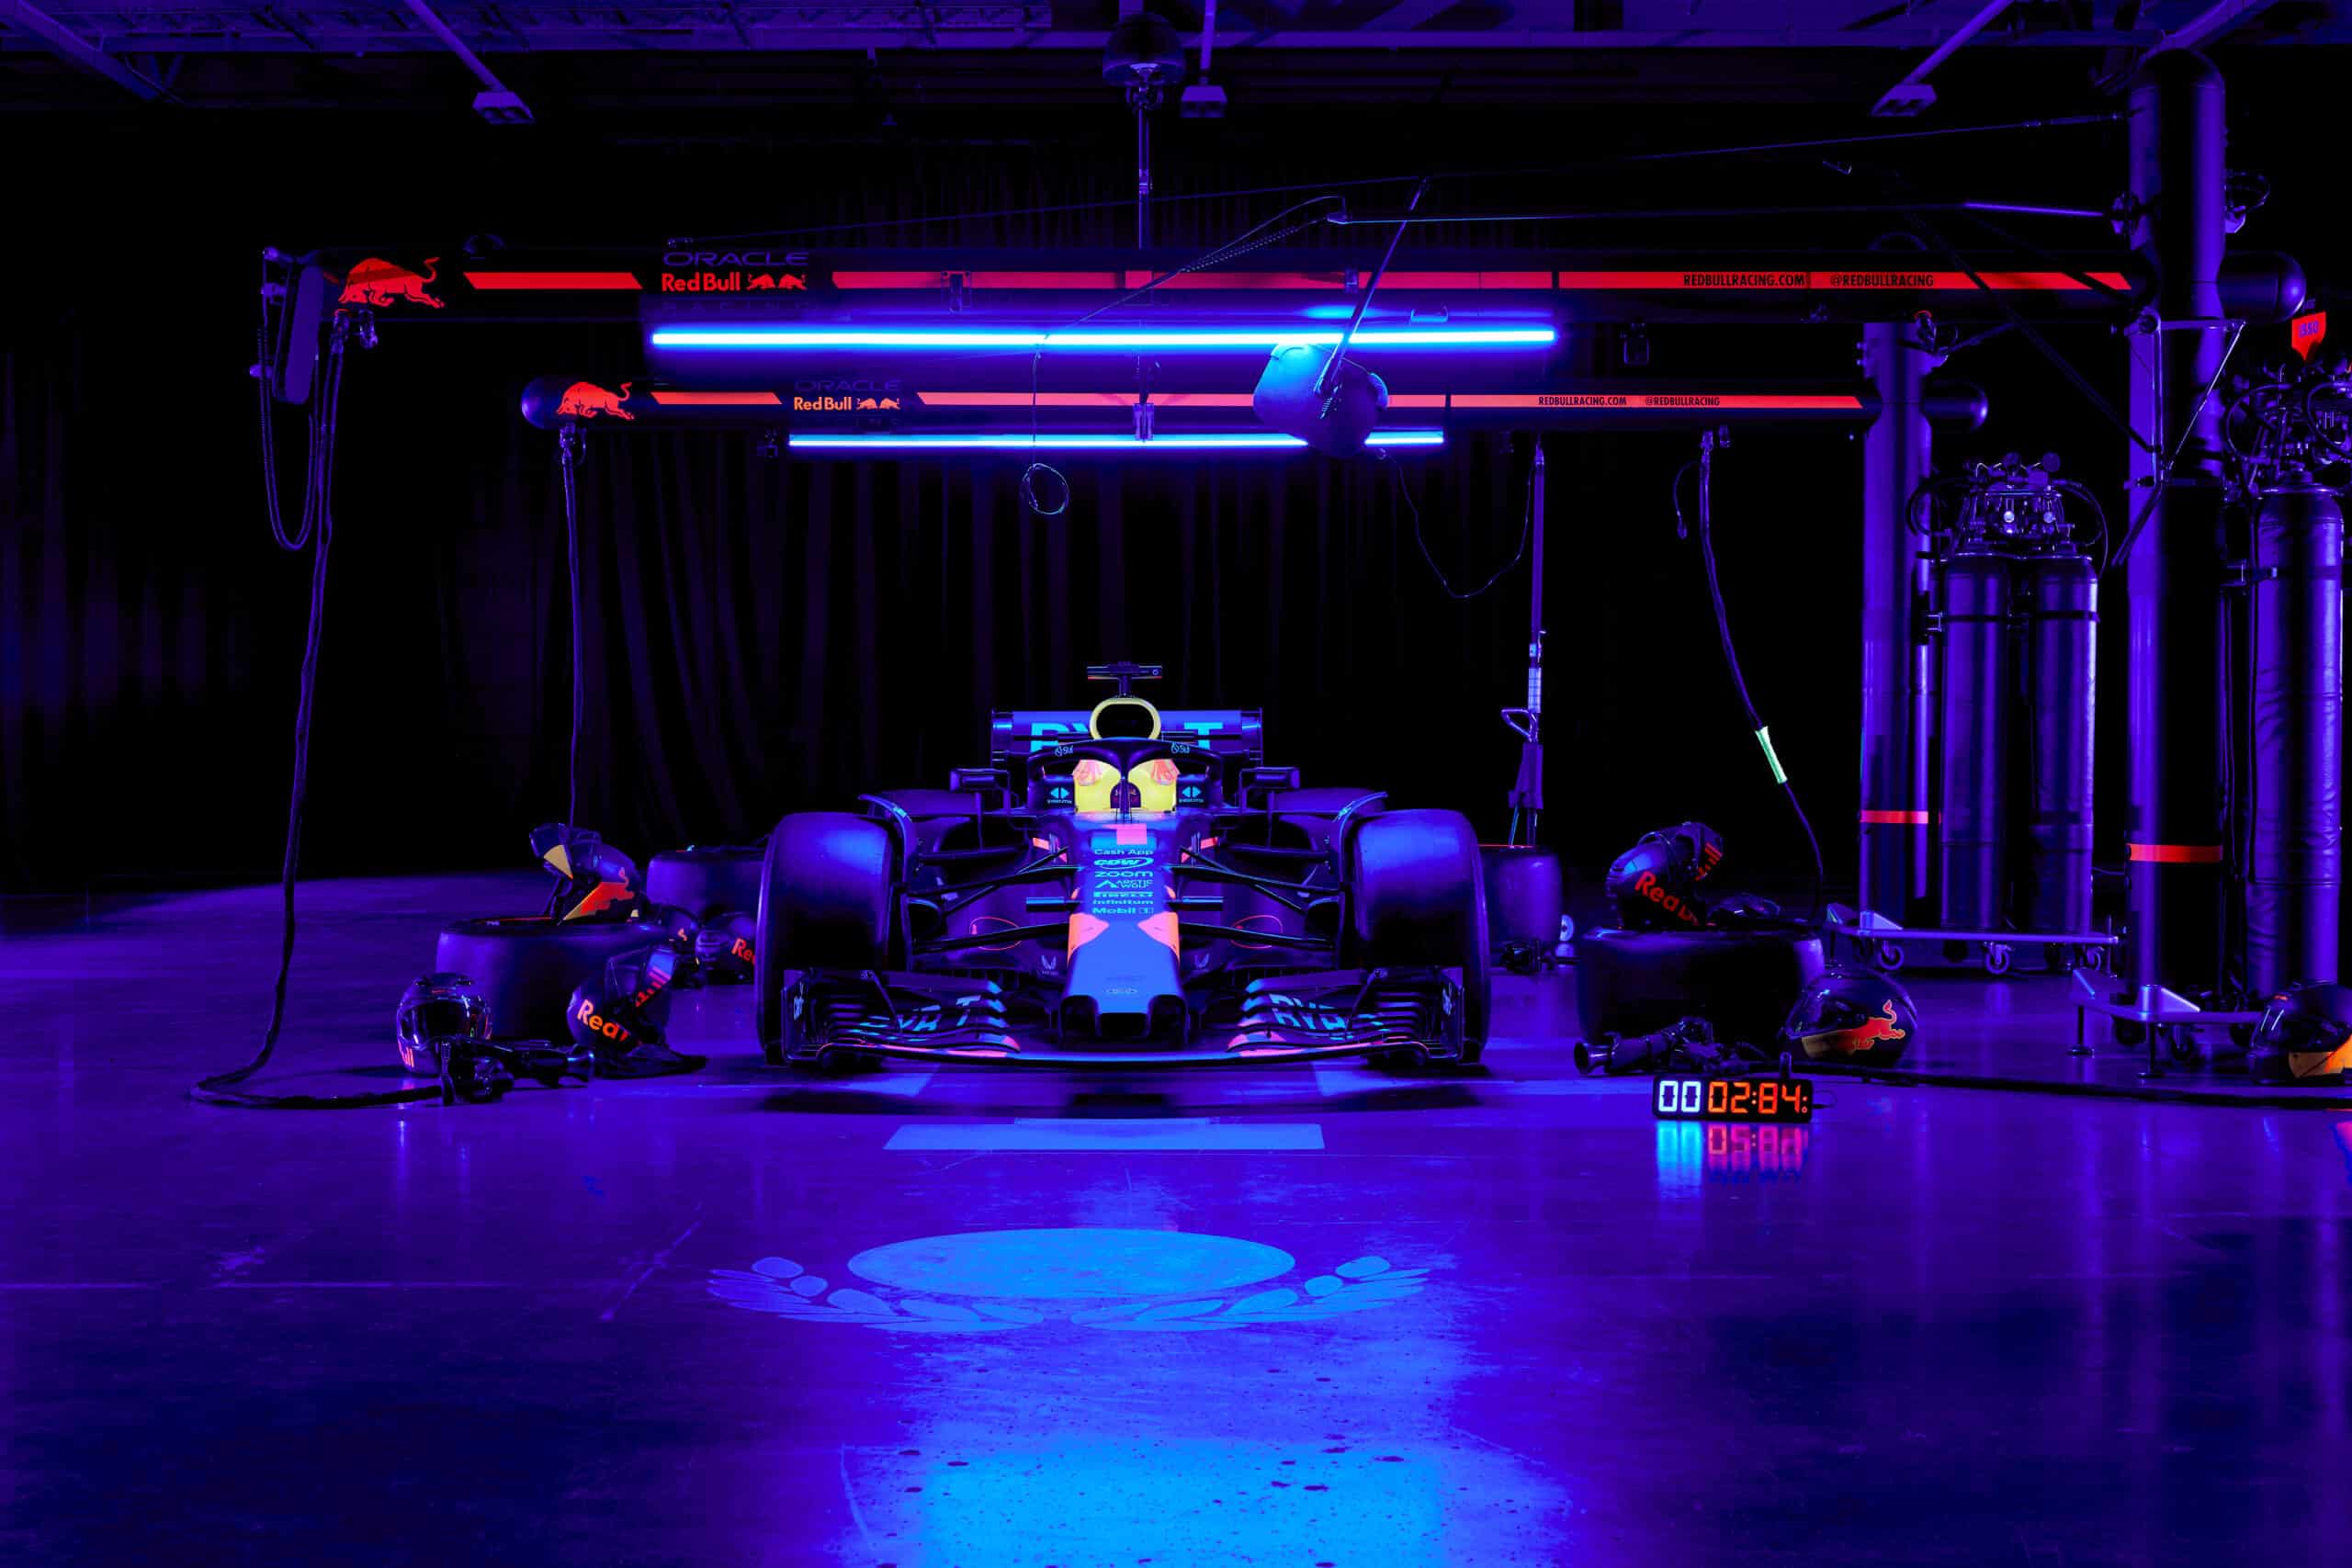 ¿Es posible hacer una parada en boxes en la oscuridad? El desafío de Red Bull